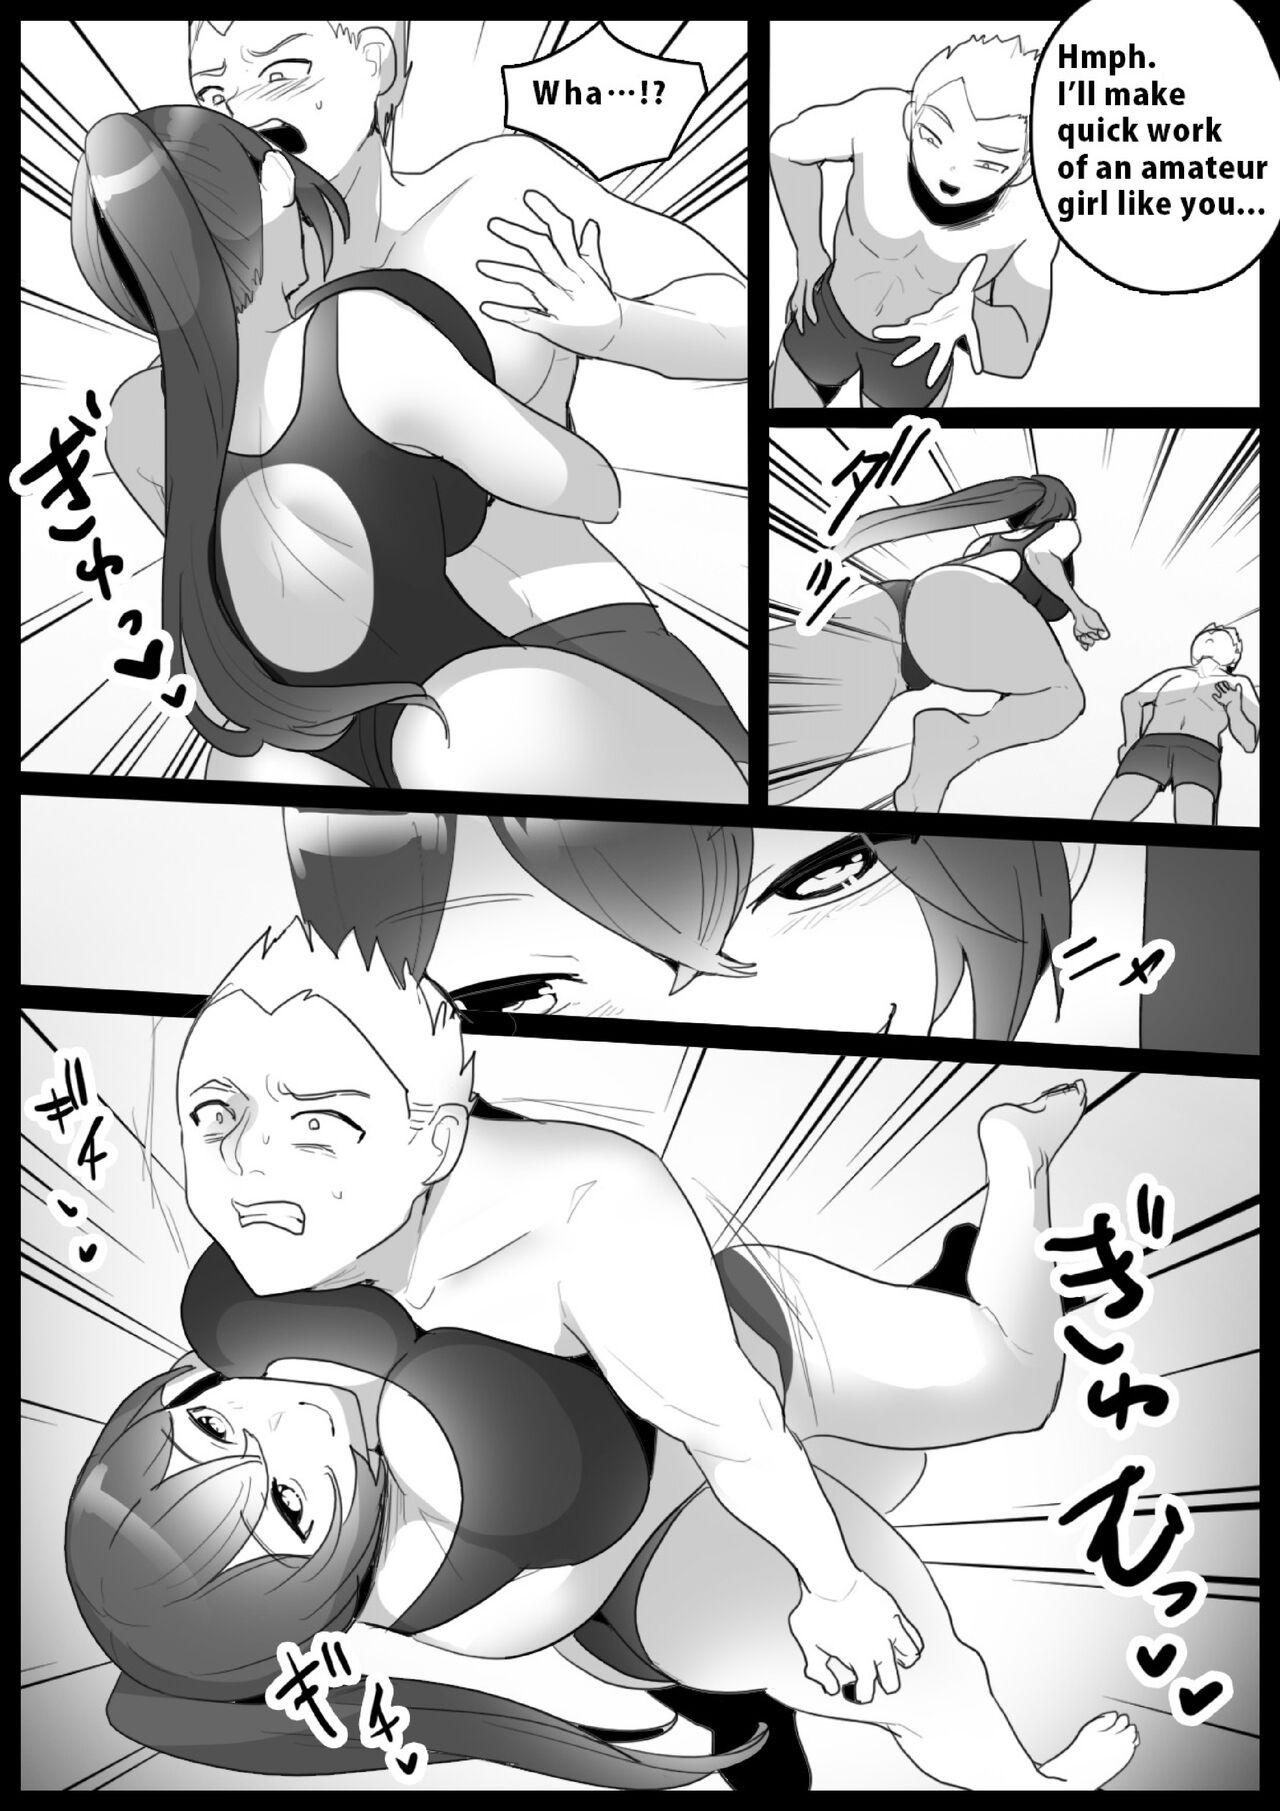 Girls Beat! vs Natsumi 1